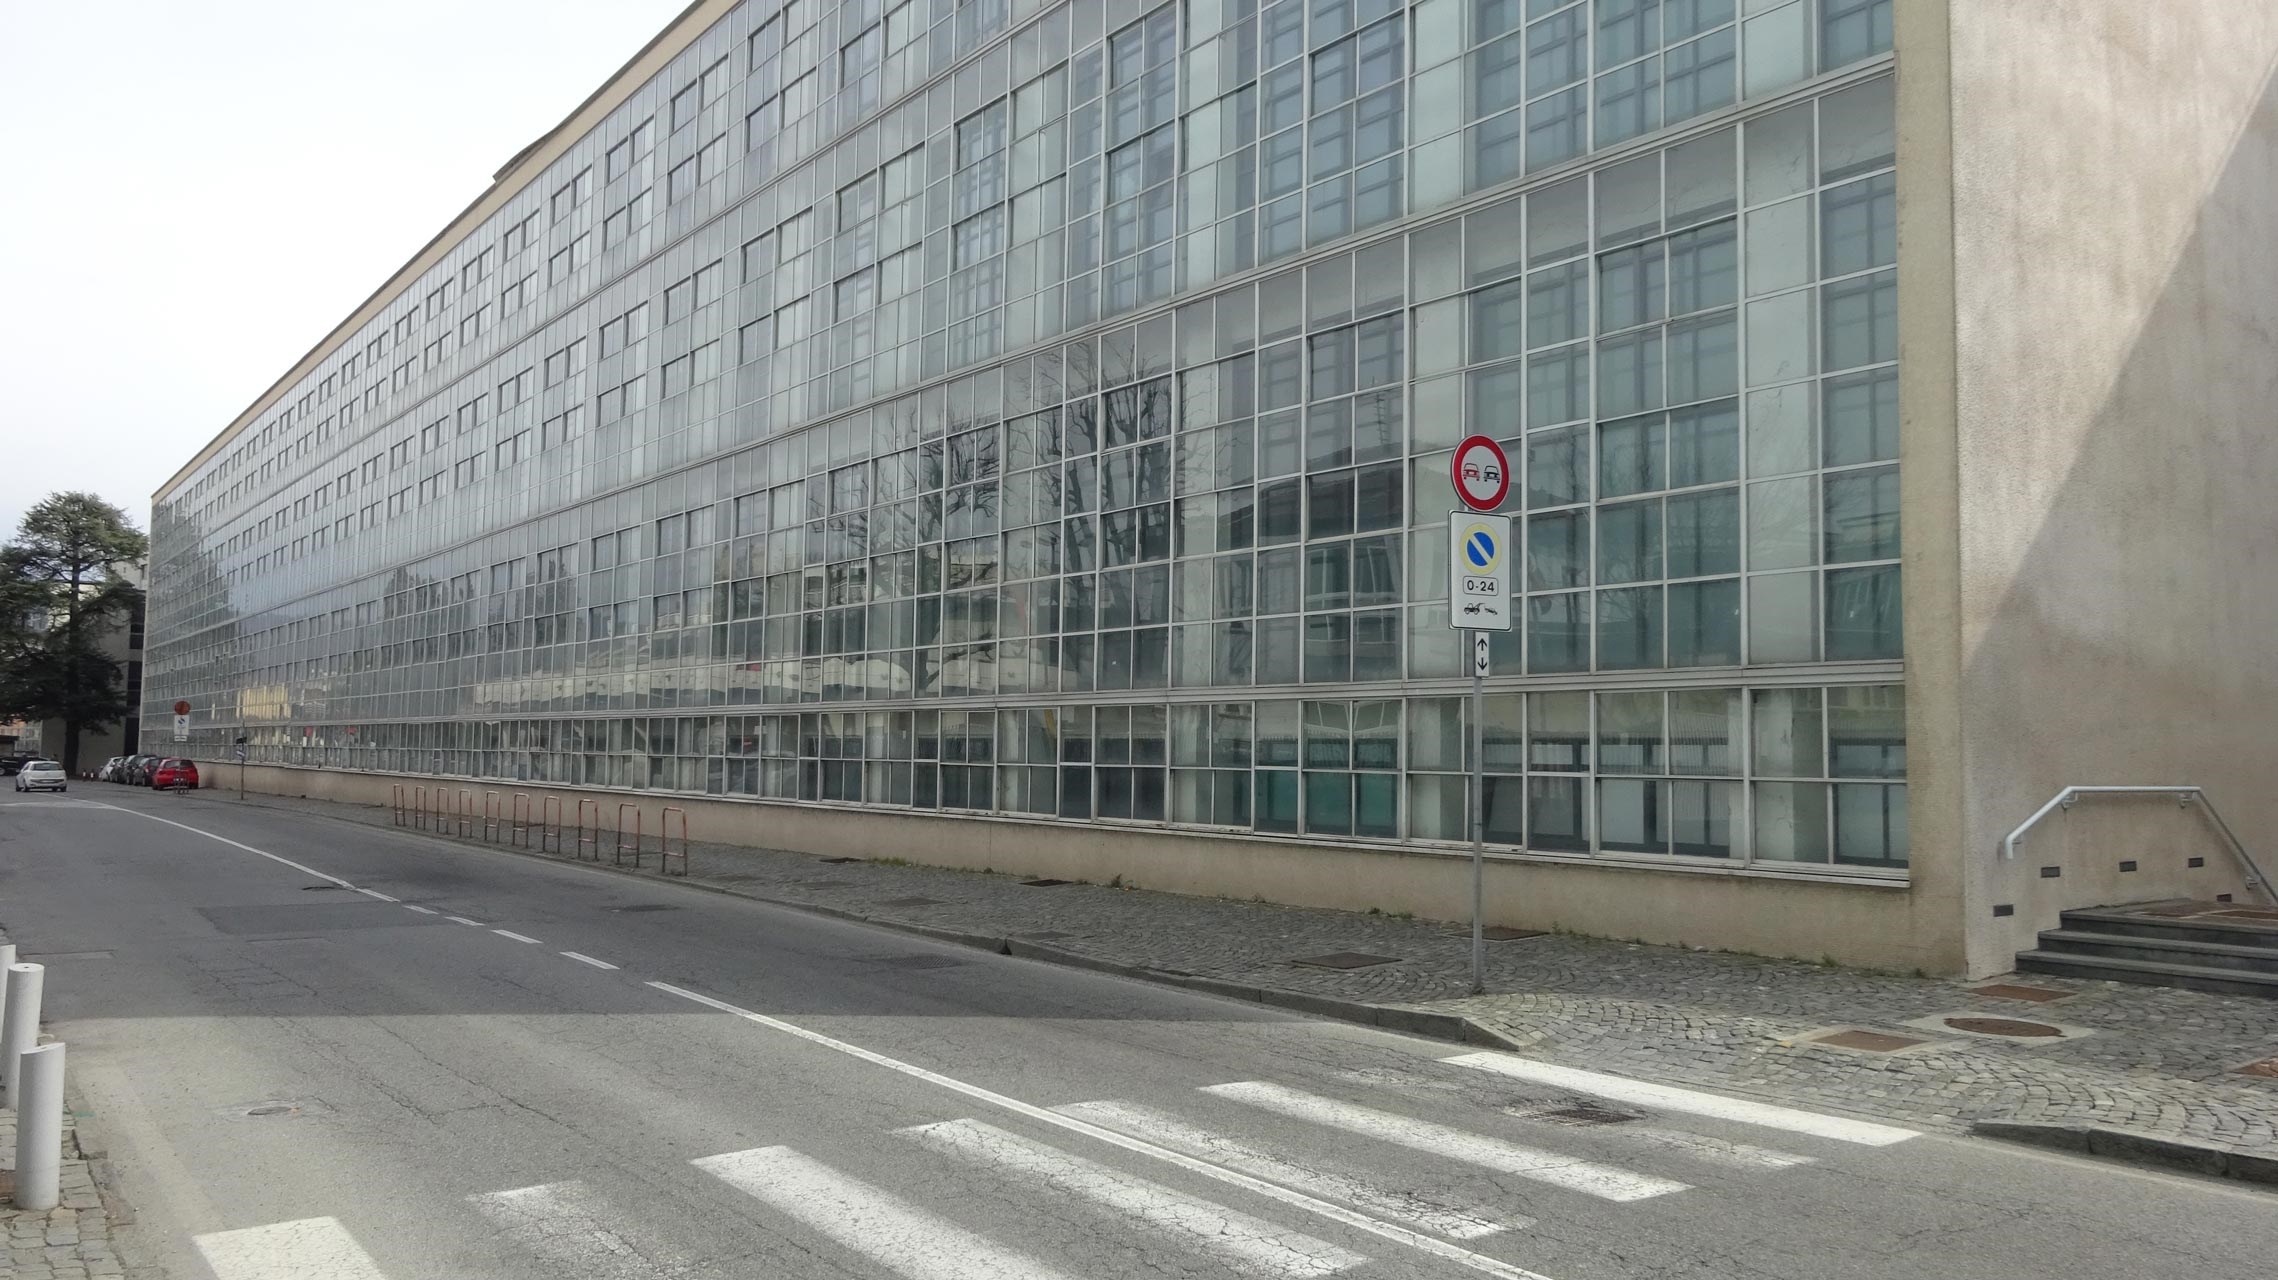 Via Guglielmo Jervis, fachada principal da fábrica ICO, projecto de Luigi Fini e Gino Pollini
© João Rocha